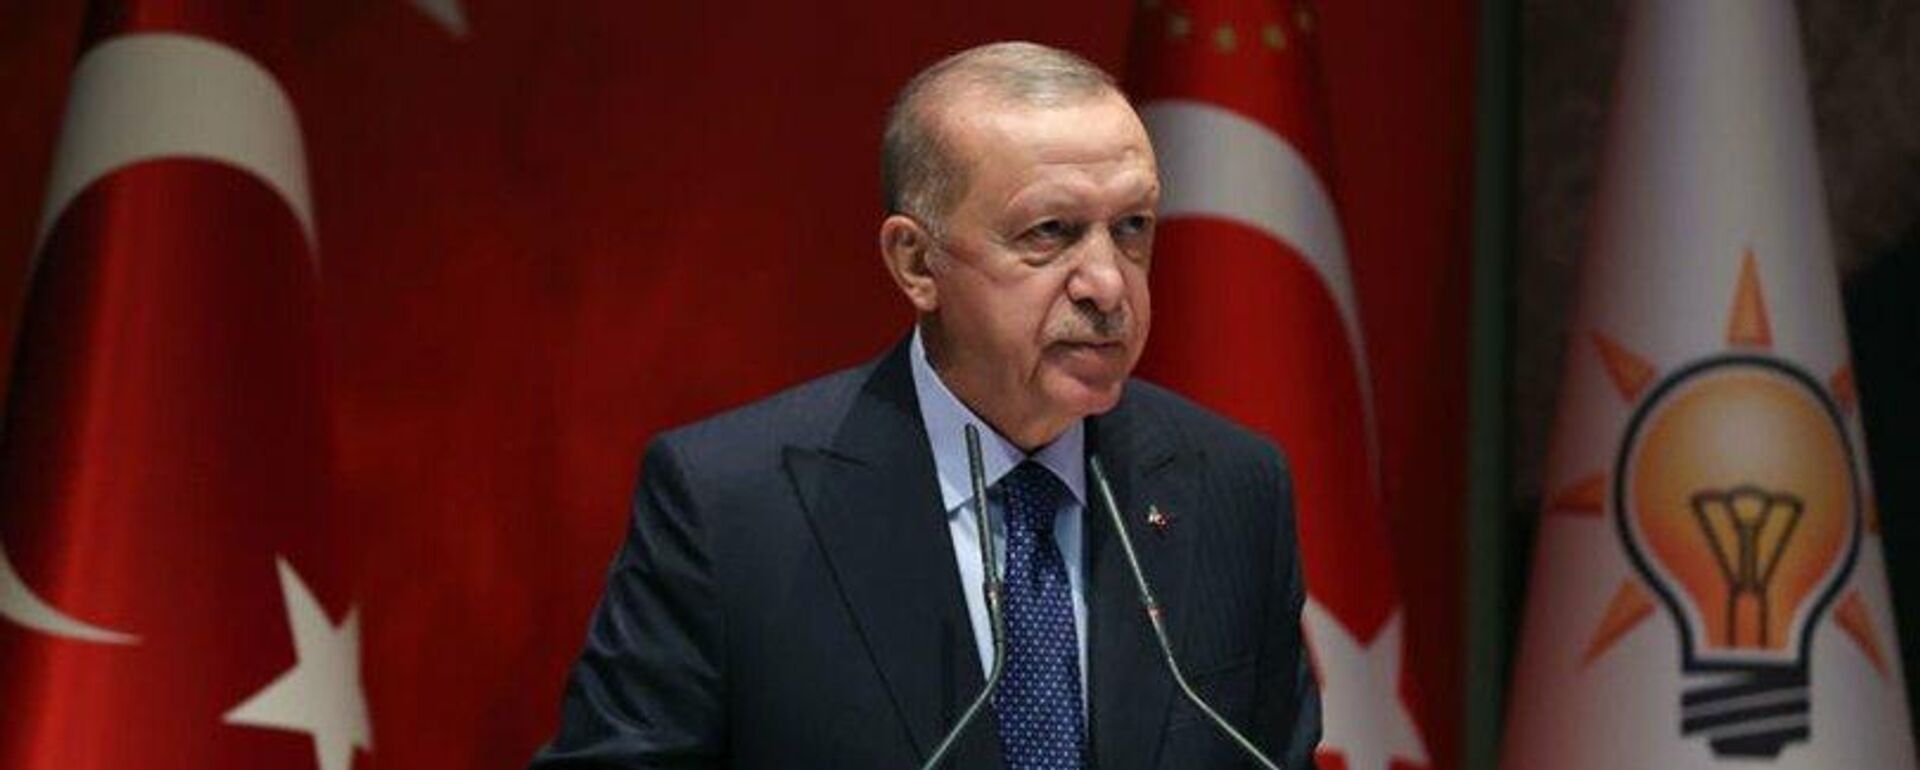 Cumhurbaşkanı Erdoğan: 2023 seçimleri, ülkemiz ve milletimiz için bir dönüm noktası olacaktır - Sputnik Türkiye, 1920, 17.02.2022